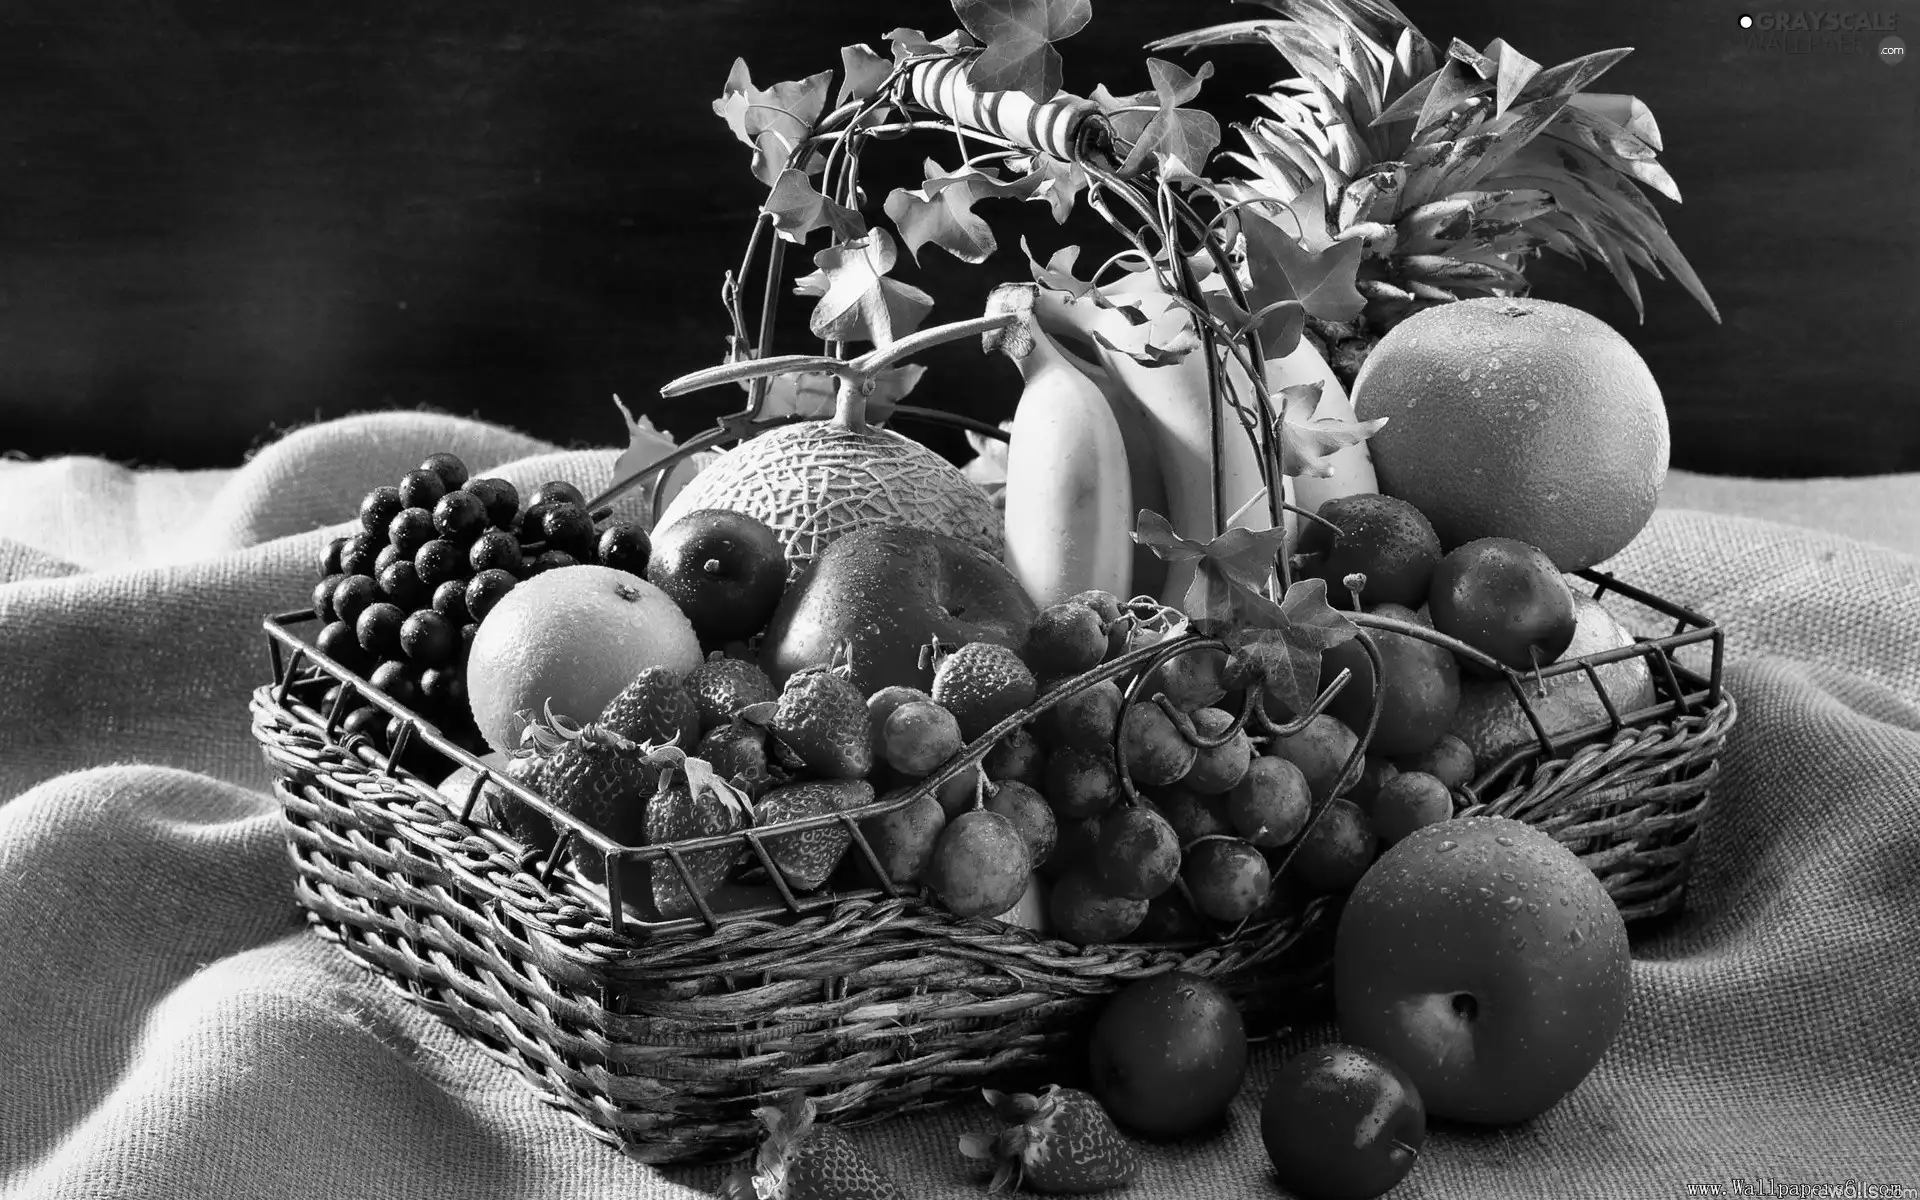 bananas, Grapes, fruits, apples, basket